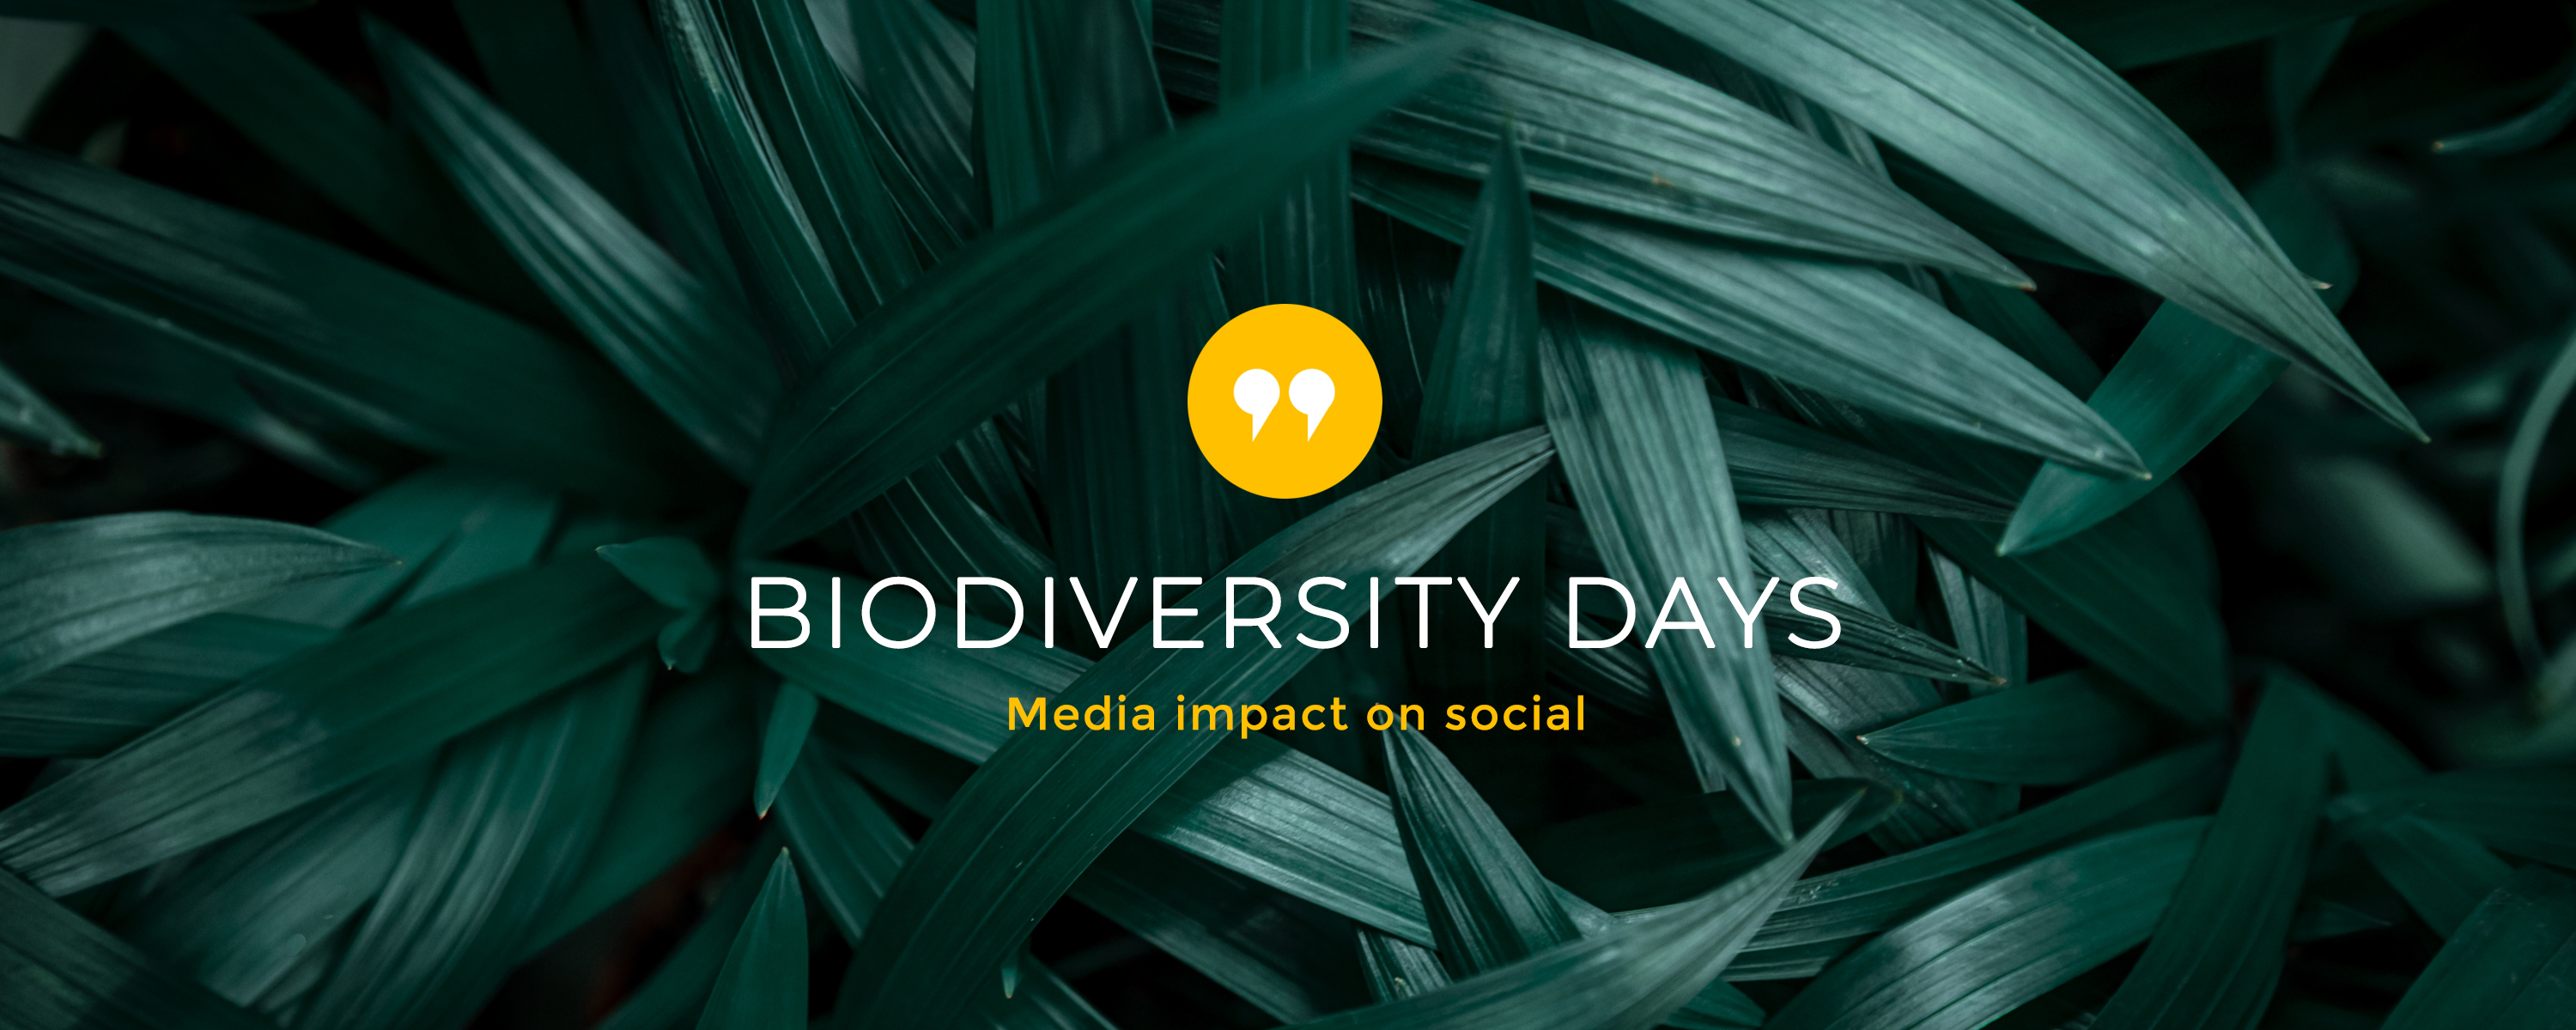 Biodiversity Days 2021